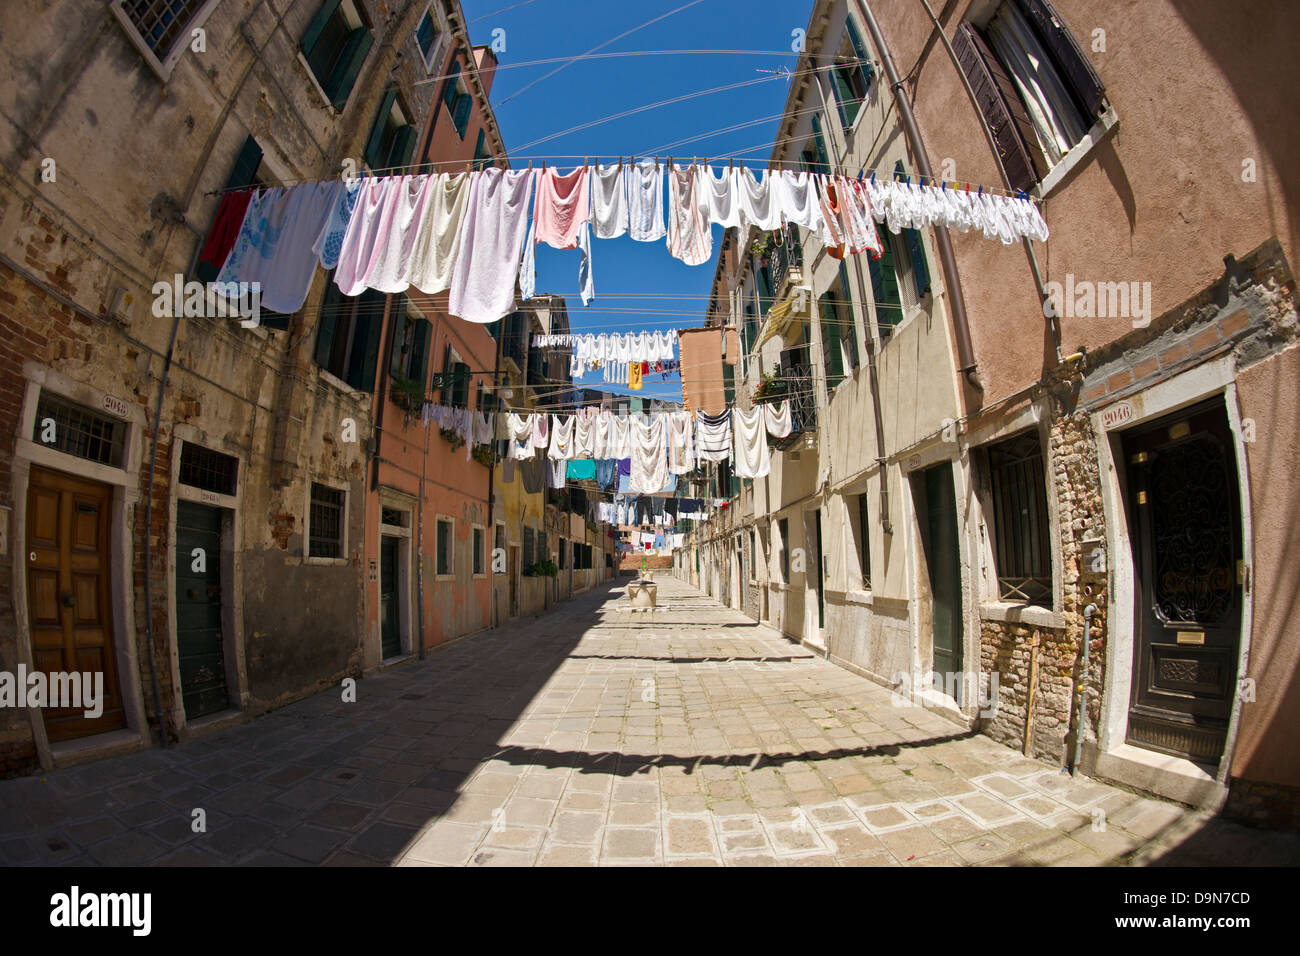 Servizio lavanderia giorno off Viale Garibaldi, Venezia Foto Stock